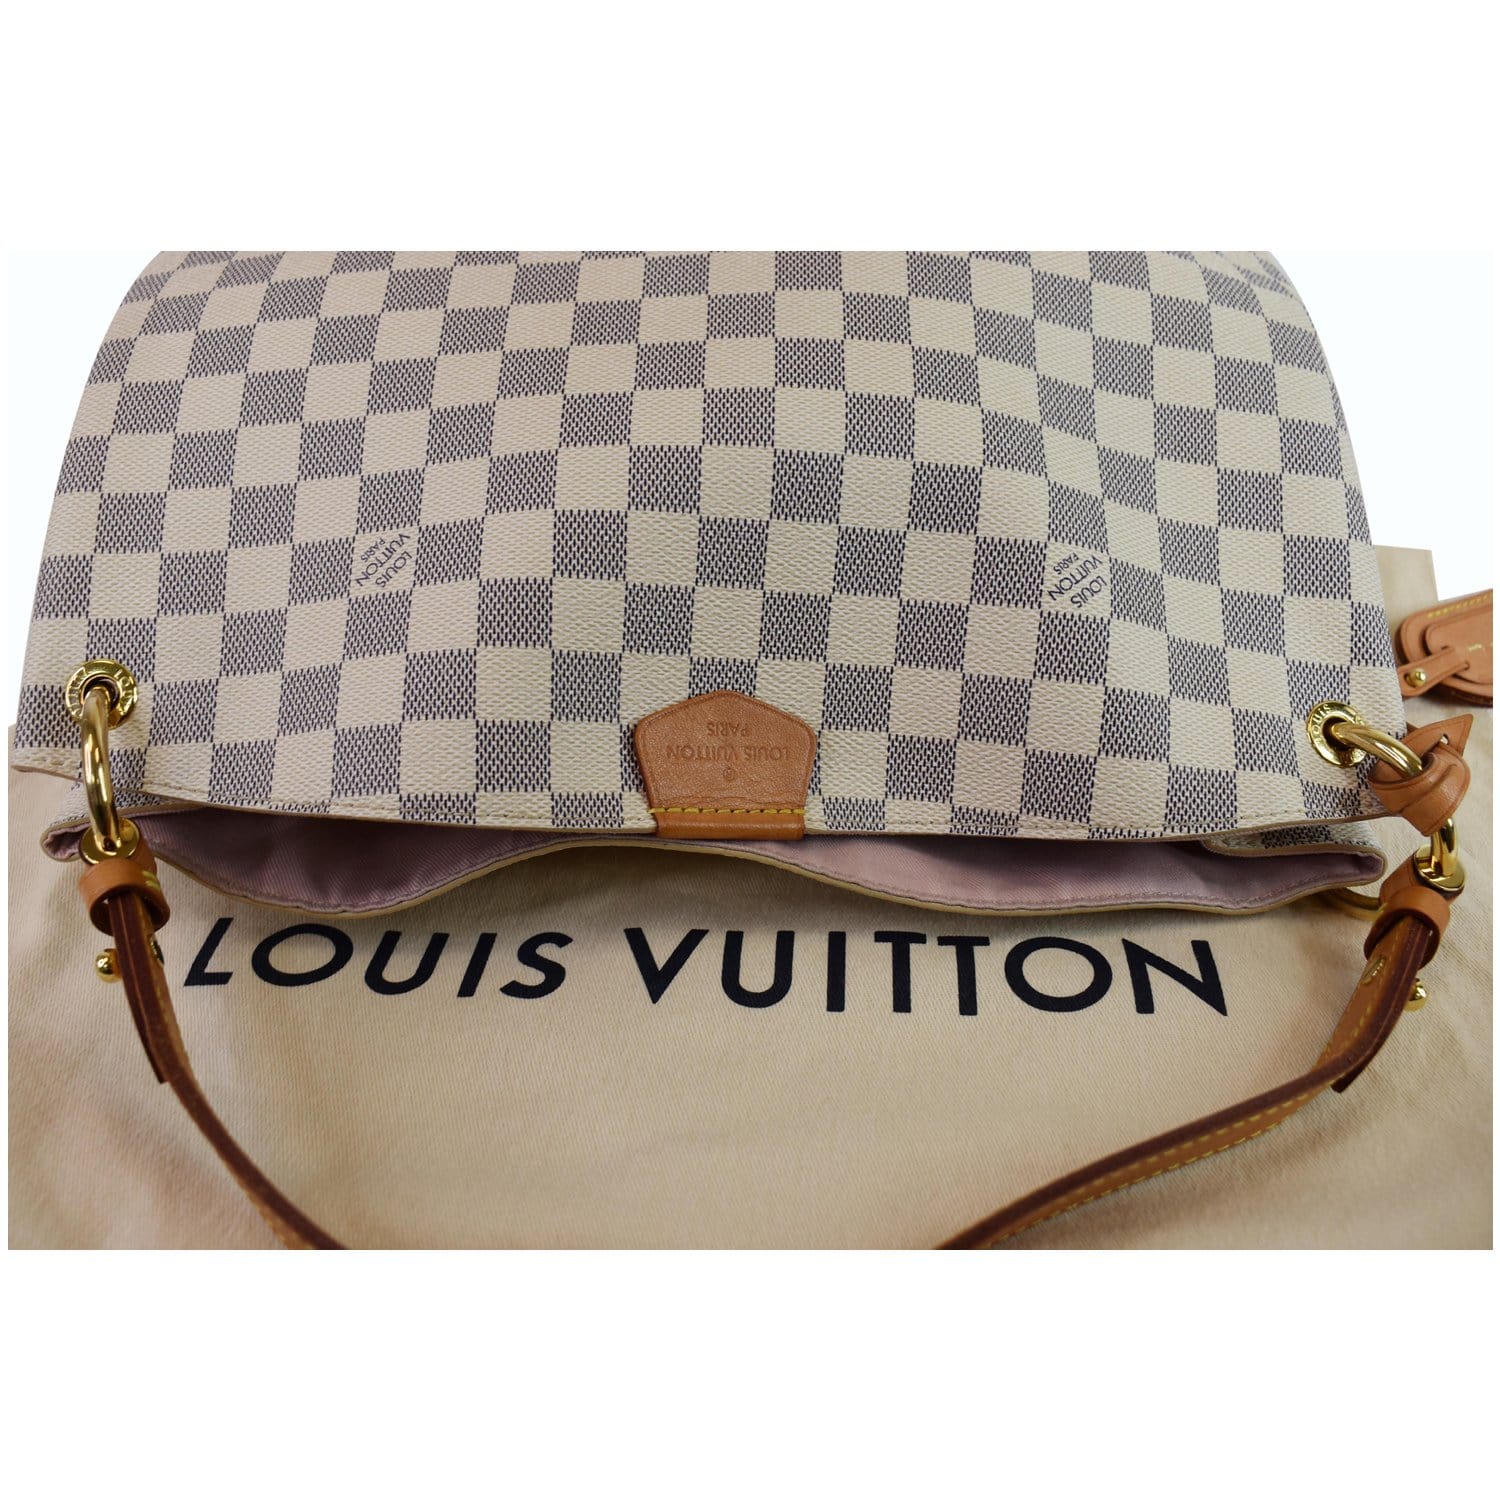 Louis Vuitton Damier Azur Graceful PM - Neutrals Totes, Handbags